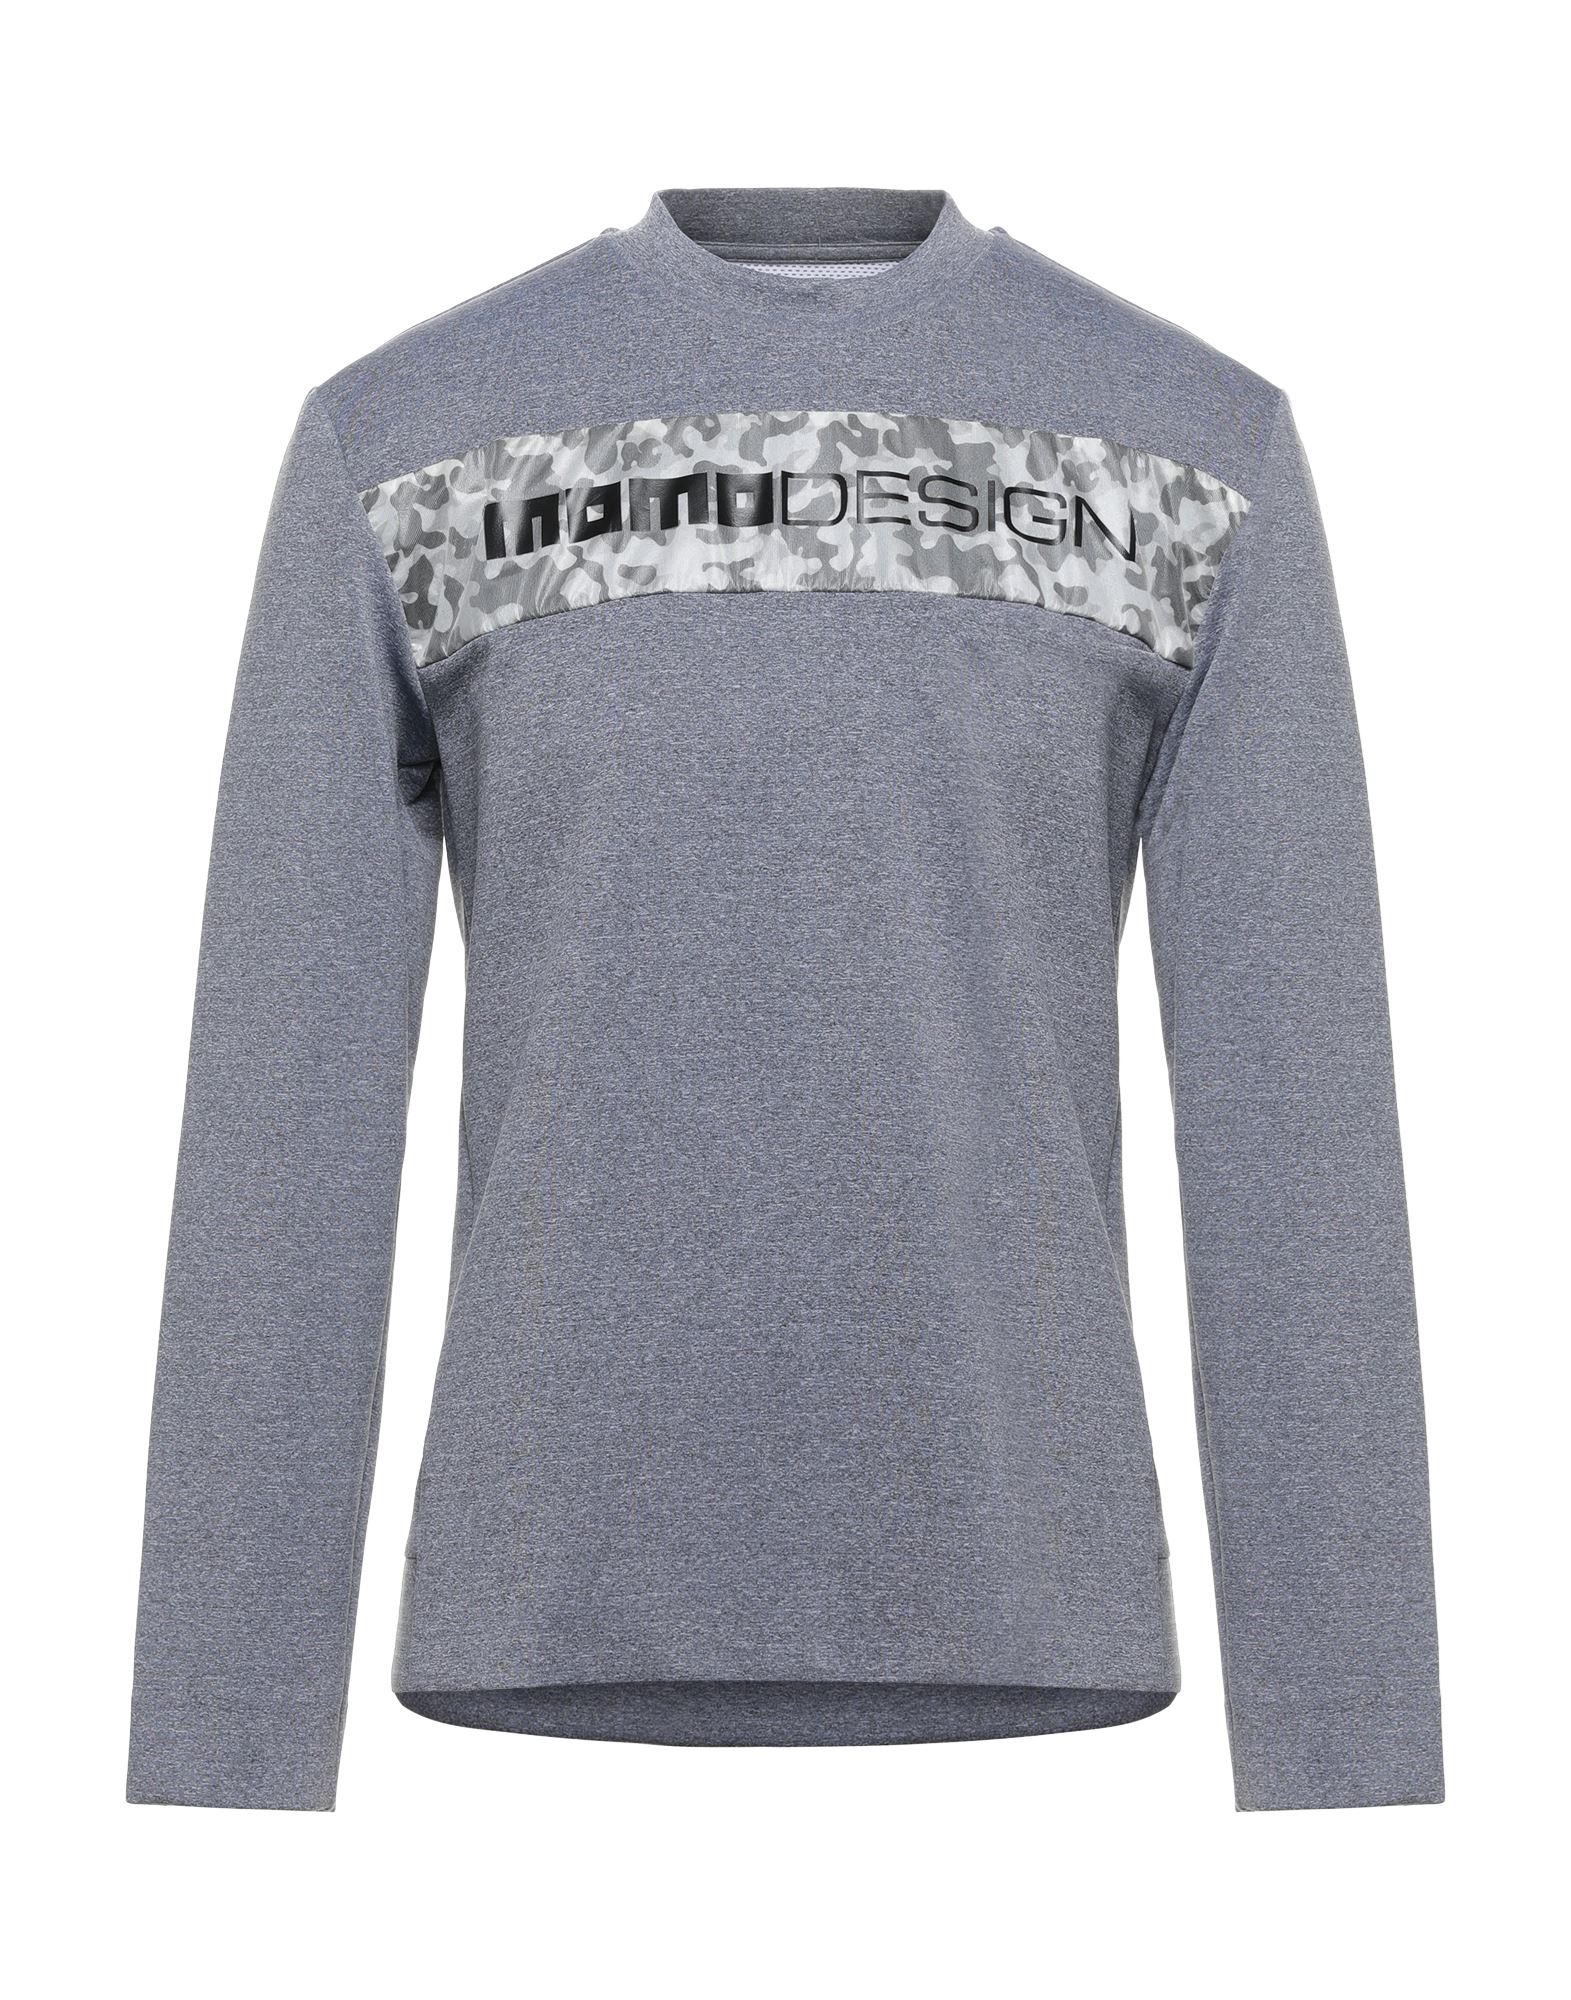 Momo Design Sweatshirts In Grey